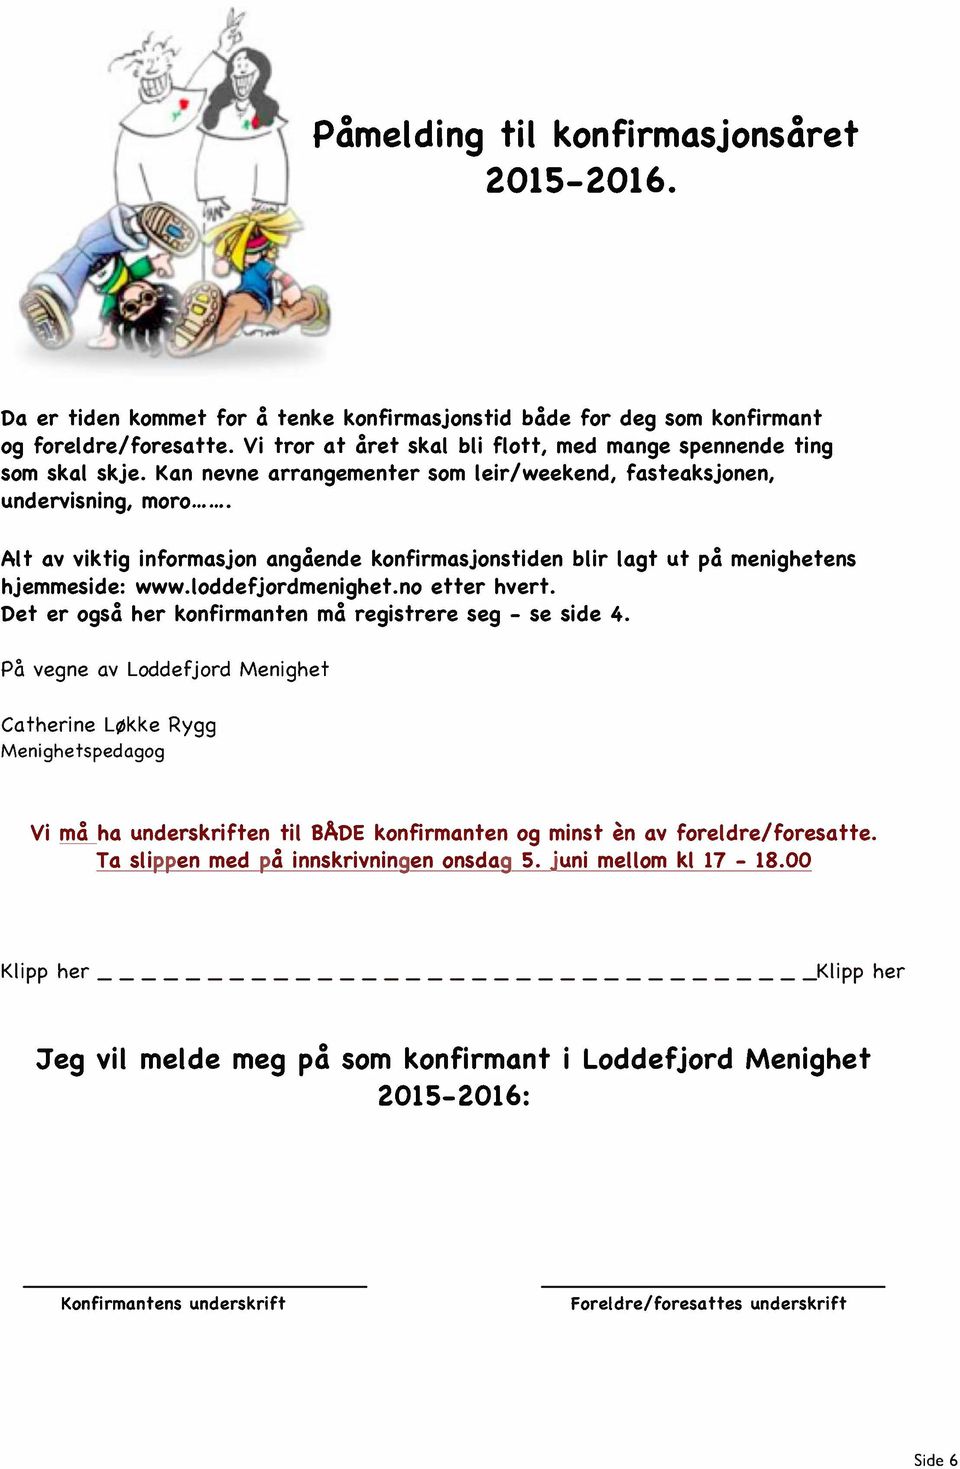 Alt av viktig informasjon angciende konfirmasjonstiden blir lagt ut pci menighetens hjemmeside: www.loddefjordmenighet.no etter hvert. Det er ogsci her konfirmanten mci registrere seg - se side 4.